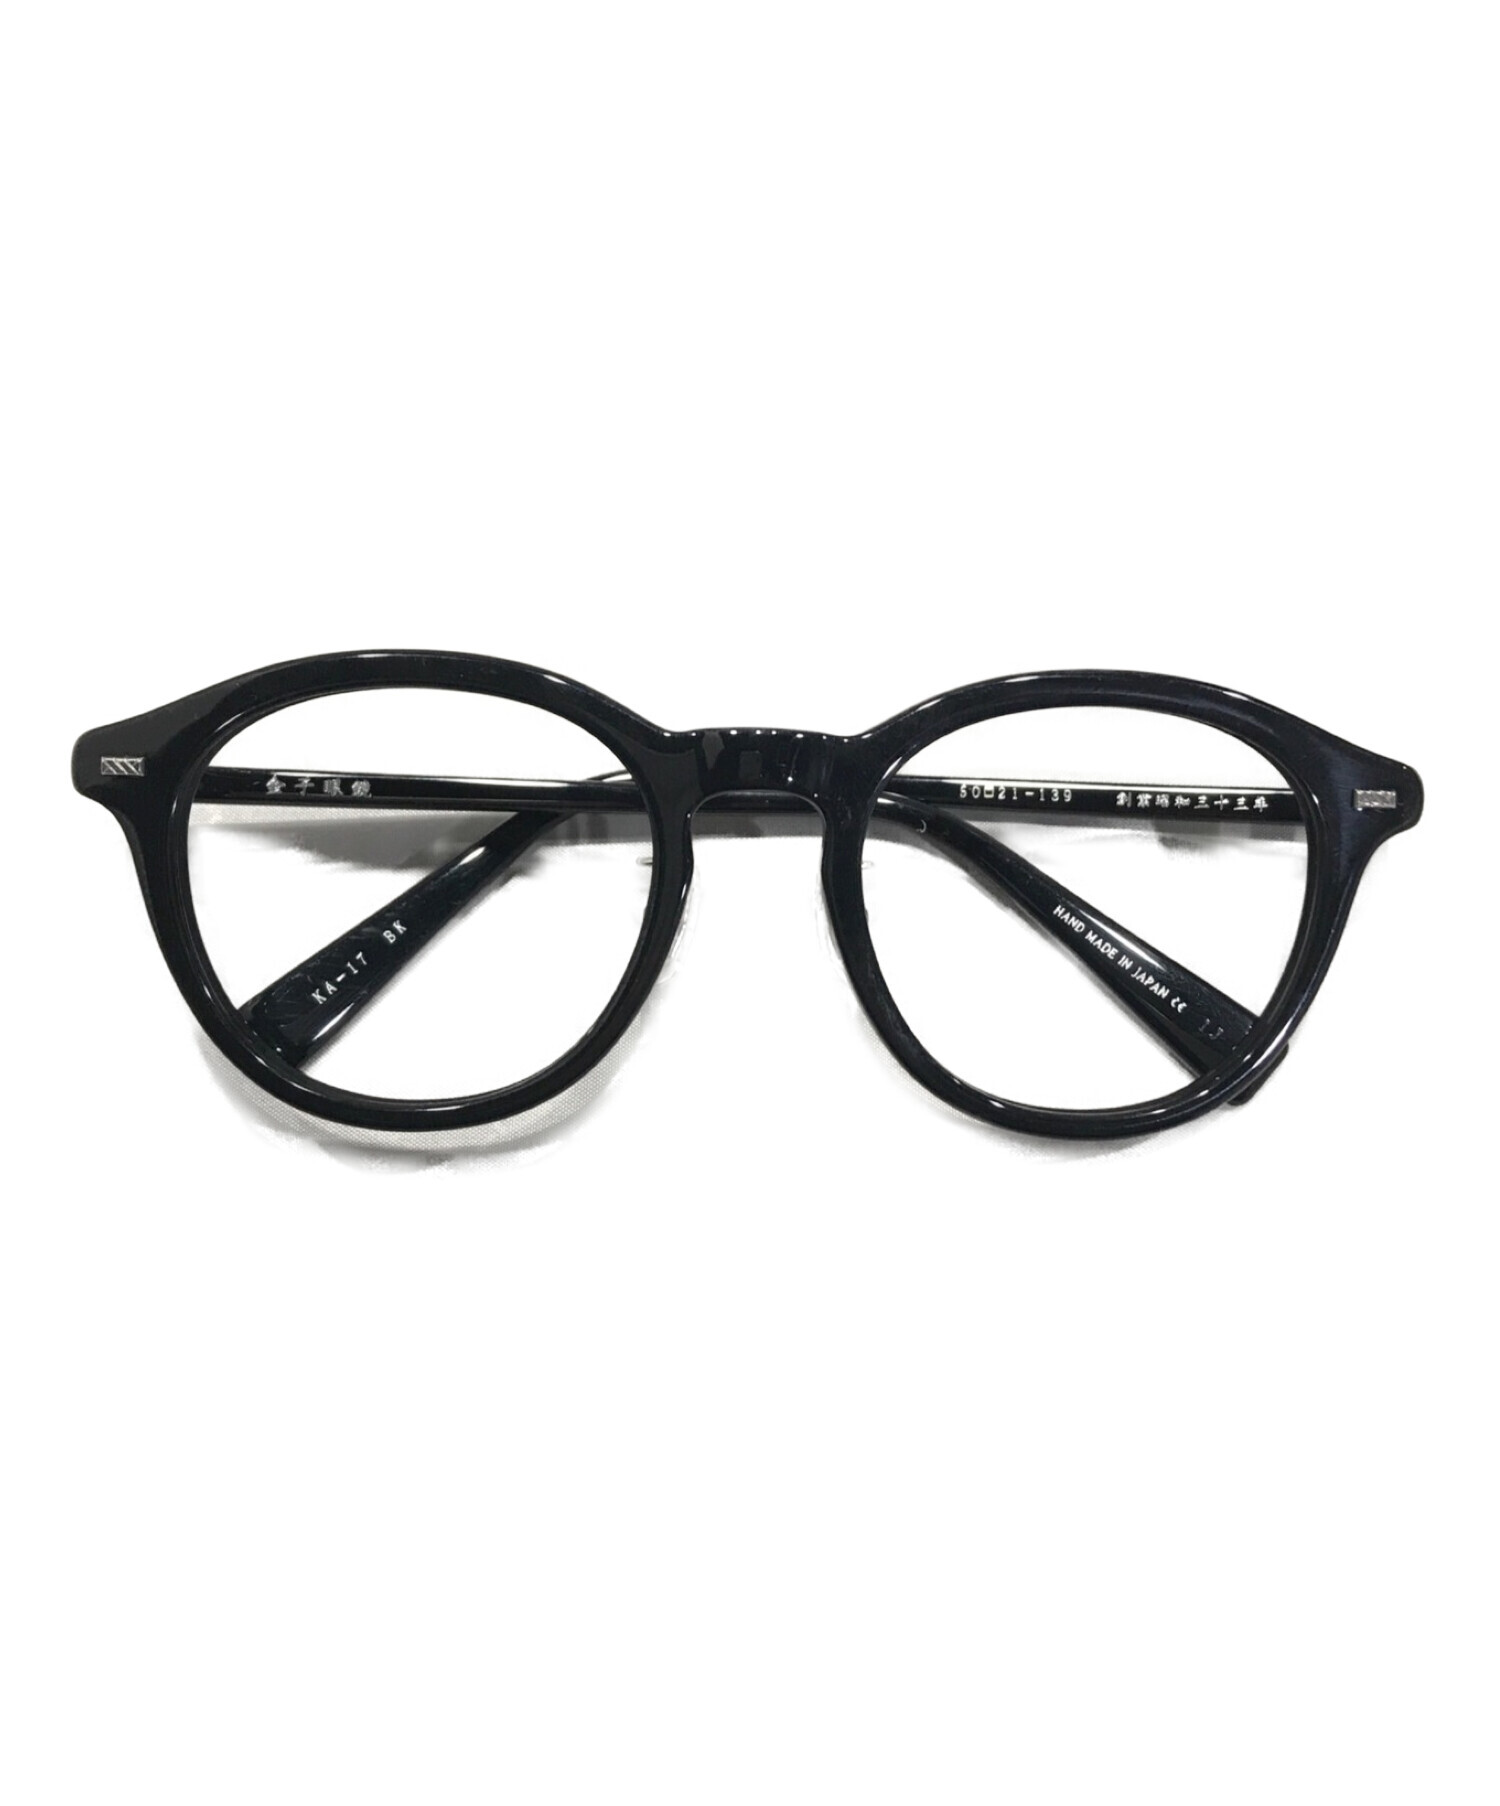 金子眼鏡 (カネコメガネ) ACETATE伊達眼鏡 ブラック